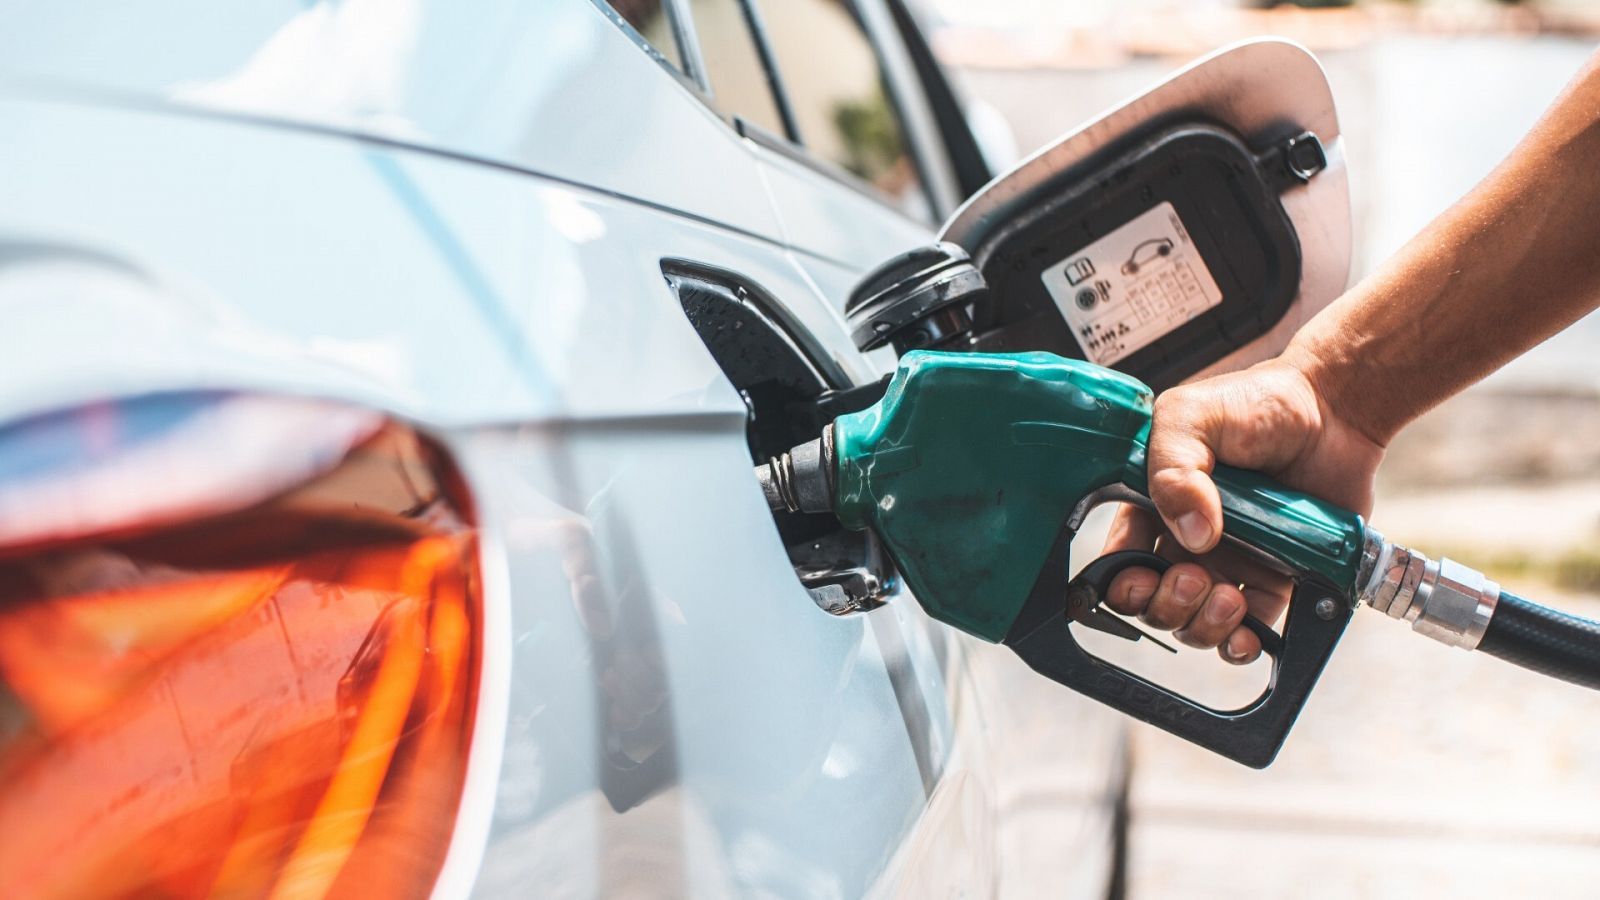 Facua asegura que la gasolina ha subido 75 céntimos en el último año y pide al Gobierno que fije precios máximos a los carburantes